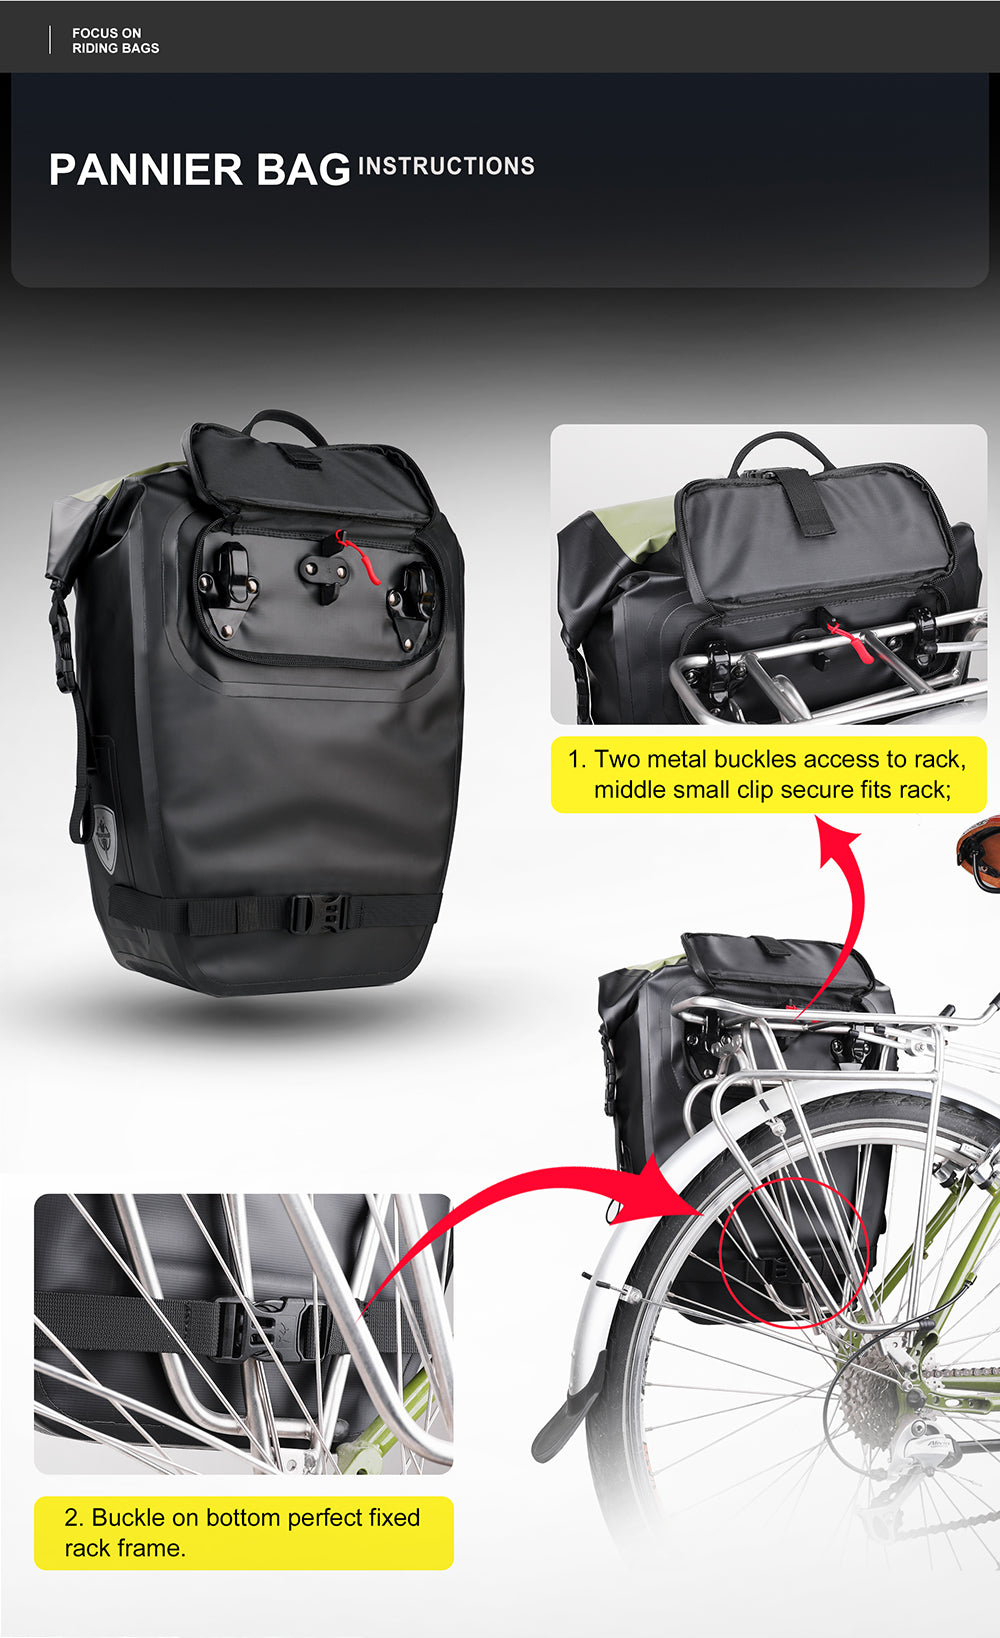 22L Waterproof Bike Pannier Bag Backpack – Rhinowalk Official Store